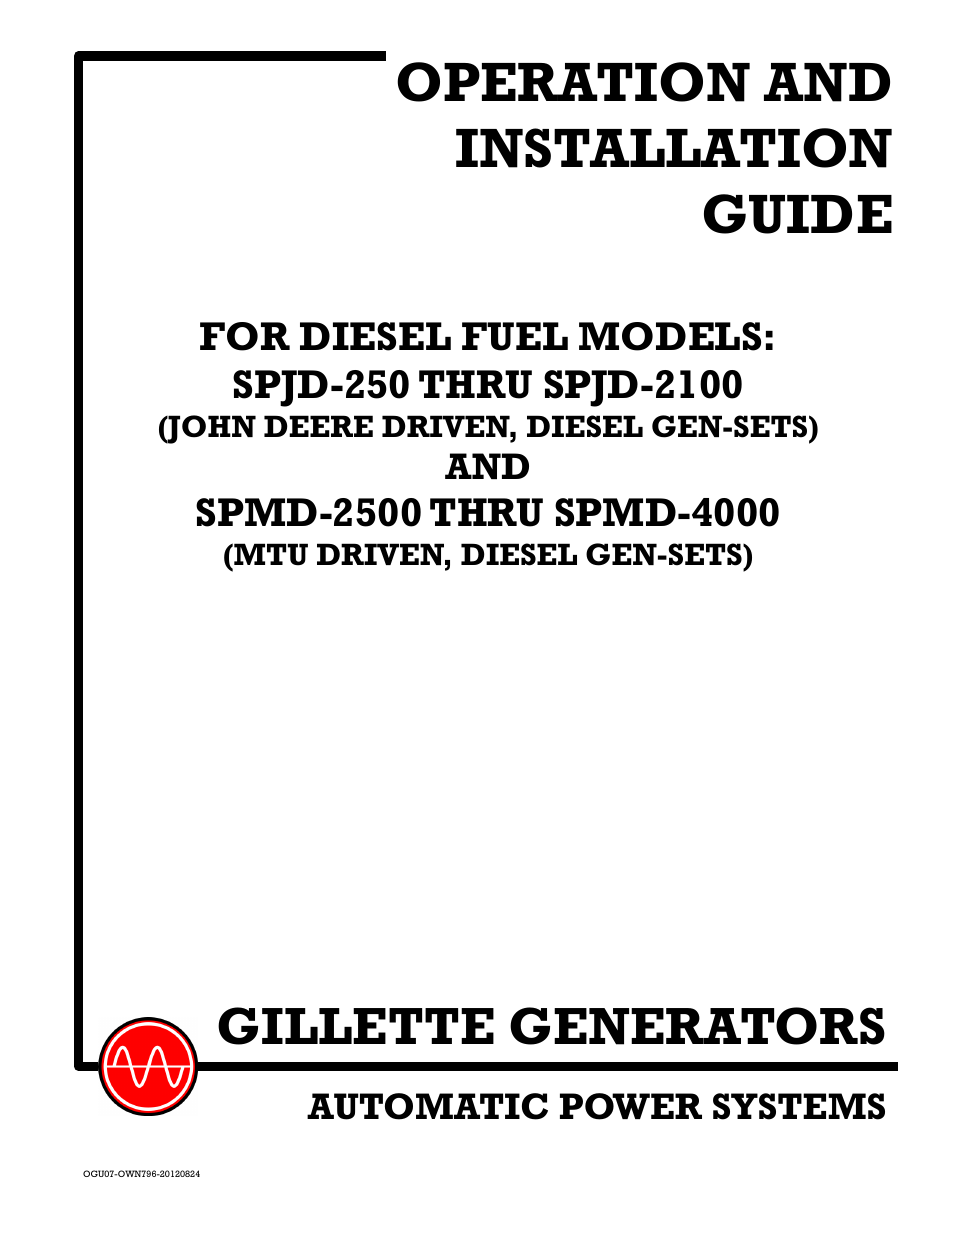 Gillette Generators SPMD-2500 THRU SPMD-4000 User Manual | 27 pages